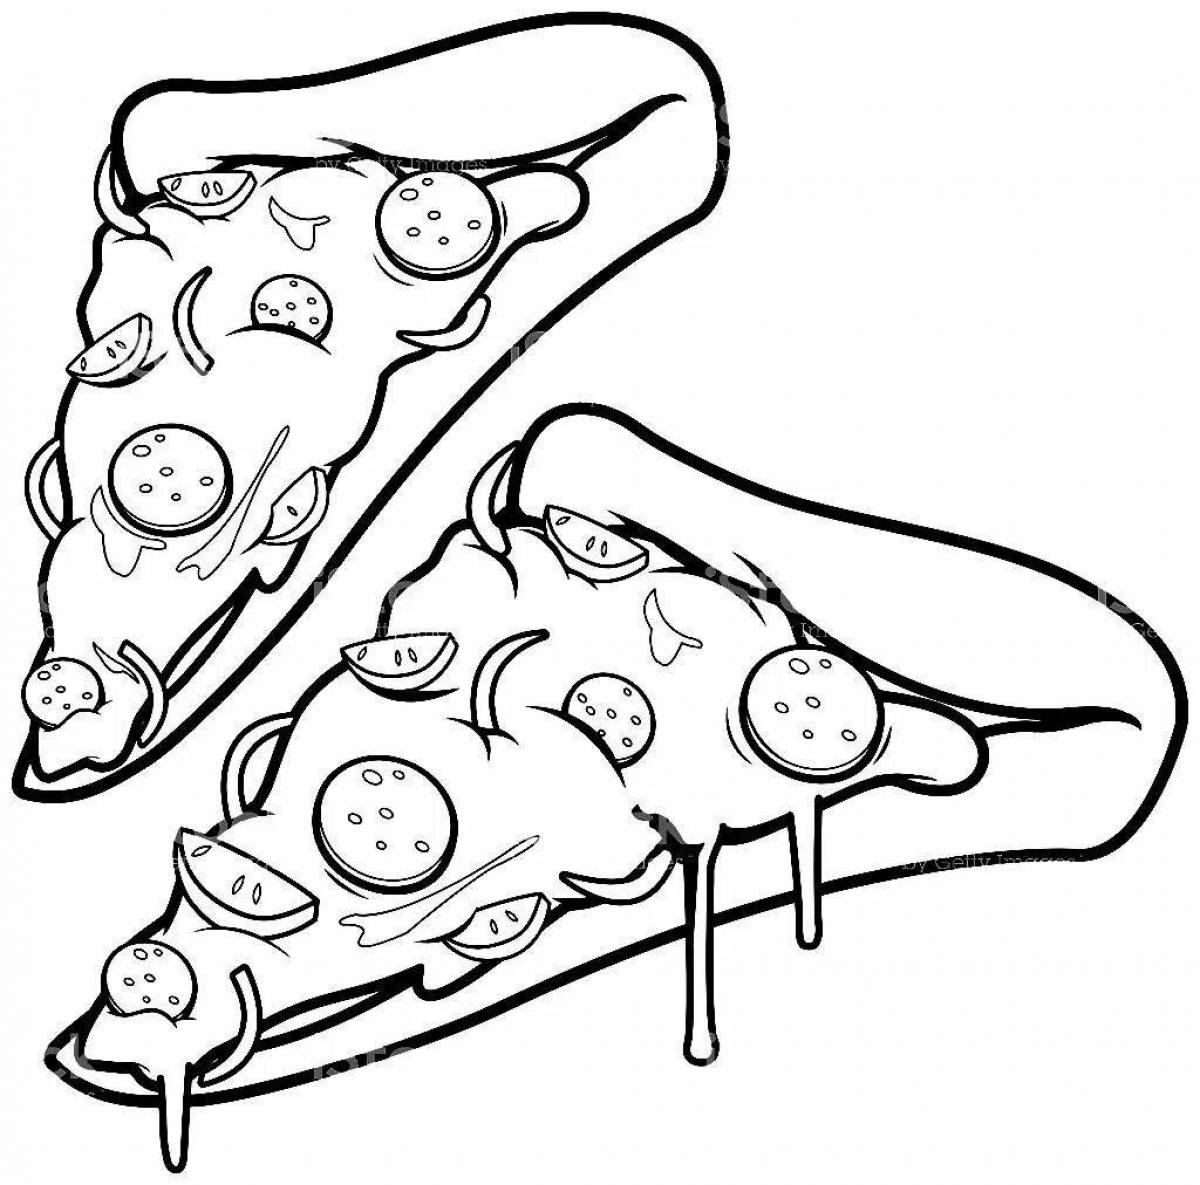 Attractive pizza slice coloring book